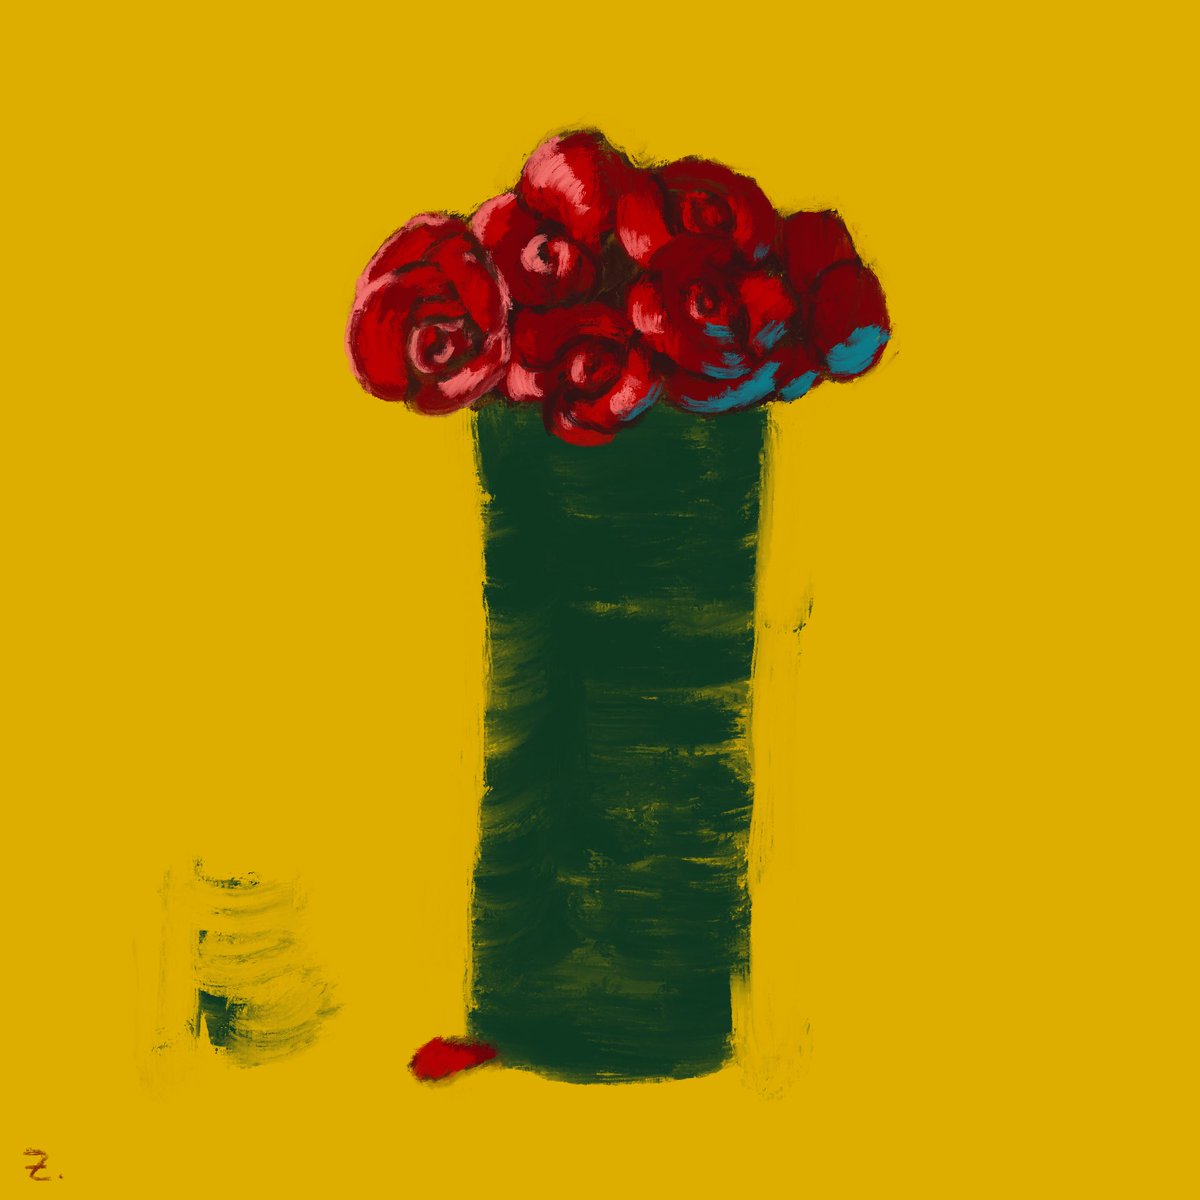 「#コミティア146 新刊『BOUQUET』。 薔薇にフォーカスした、花束のような」|ZENZOのイラスト